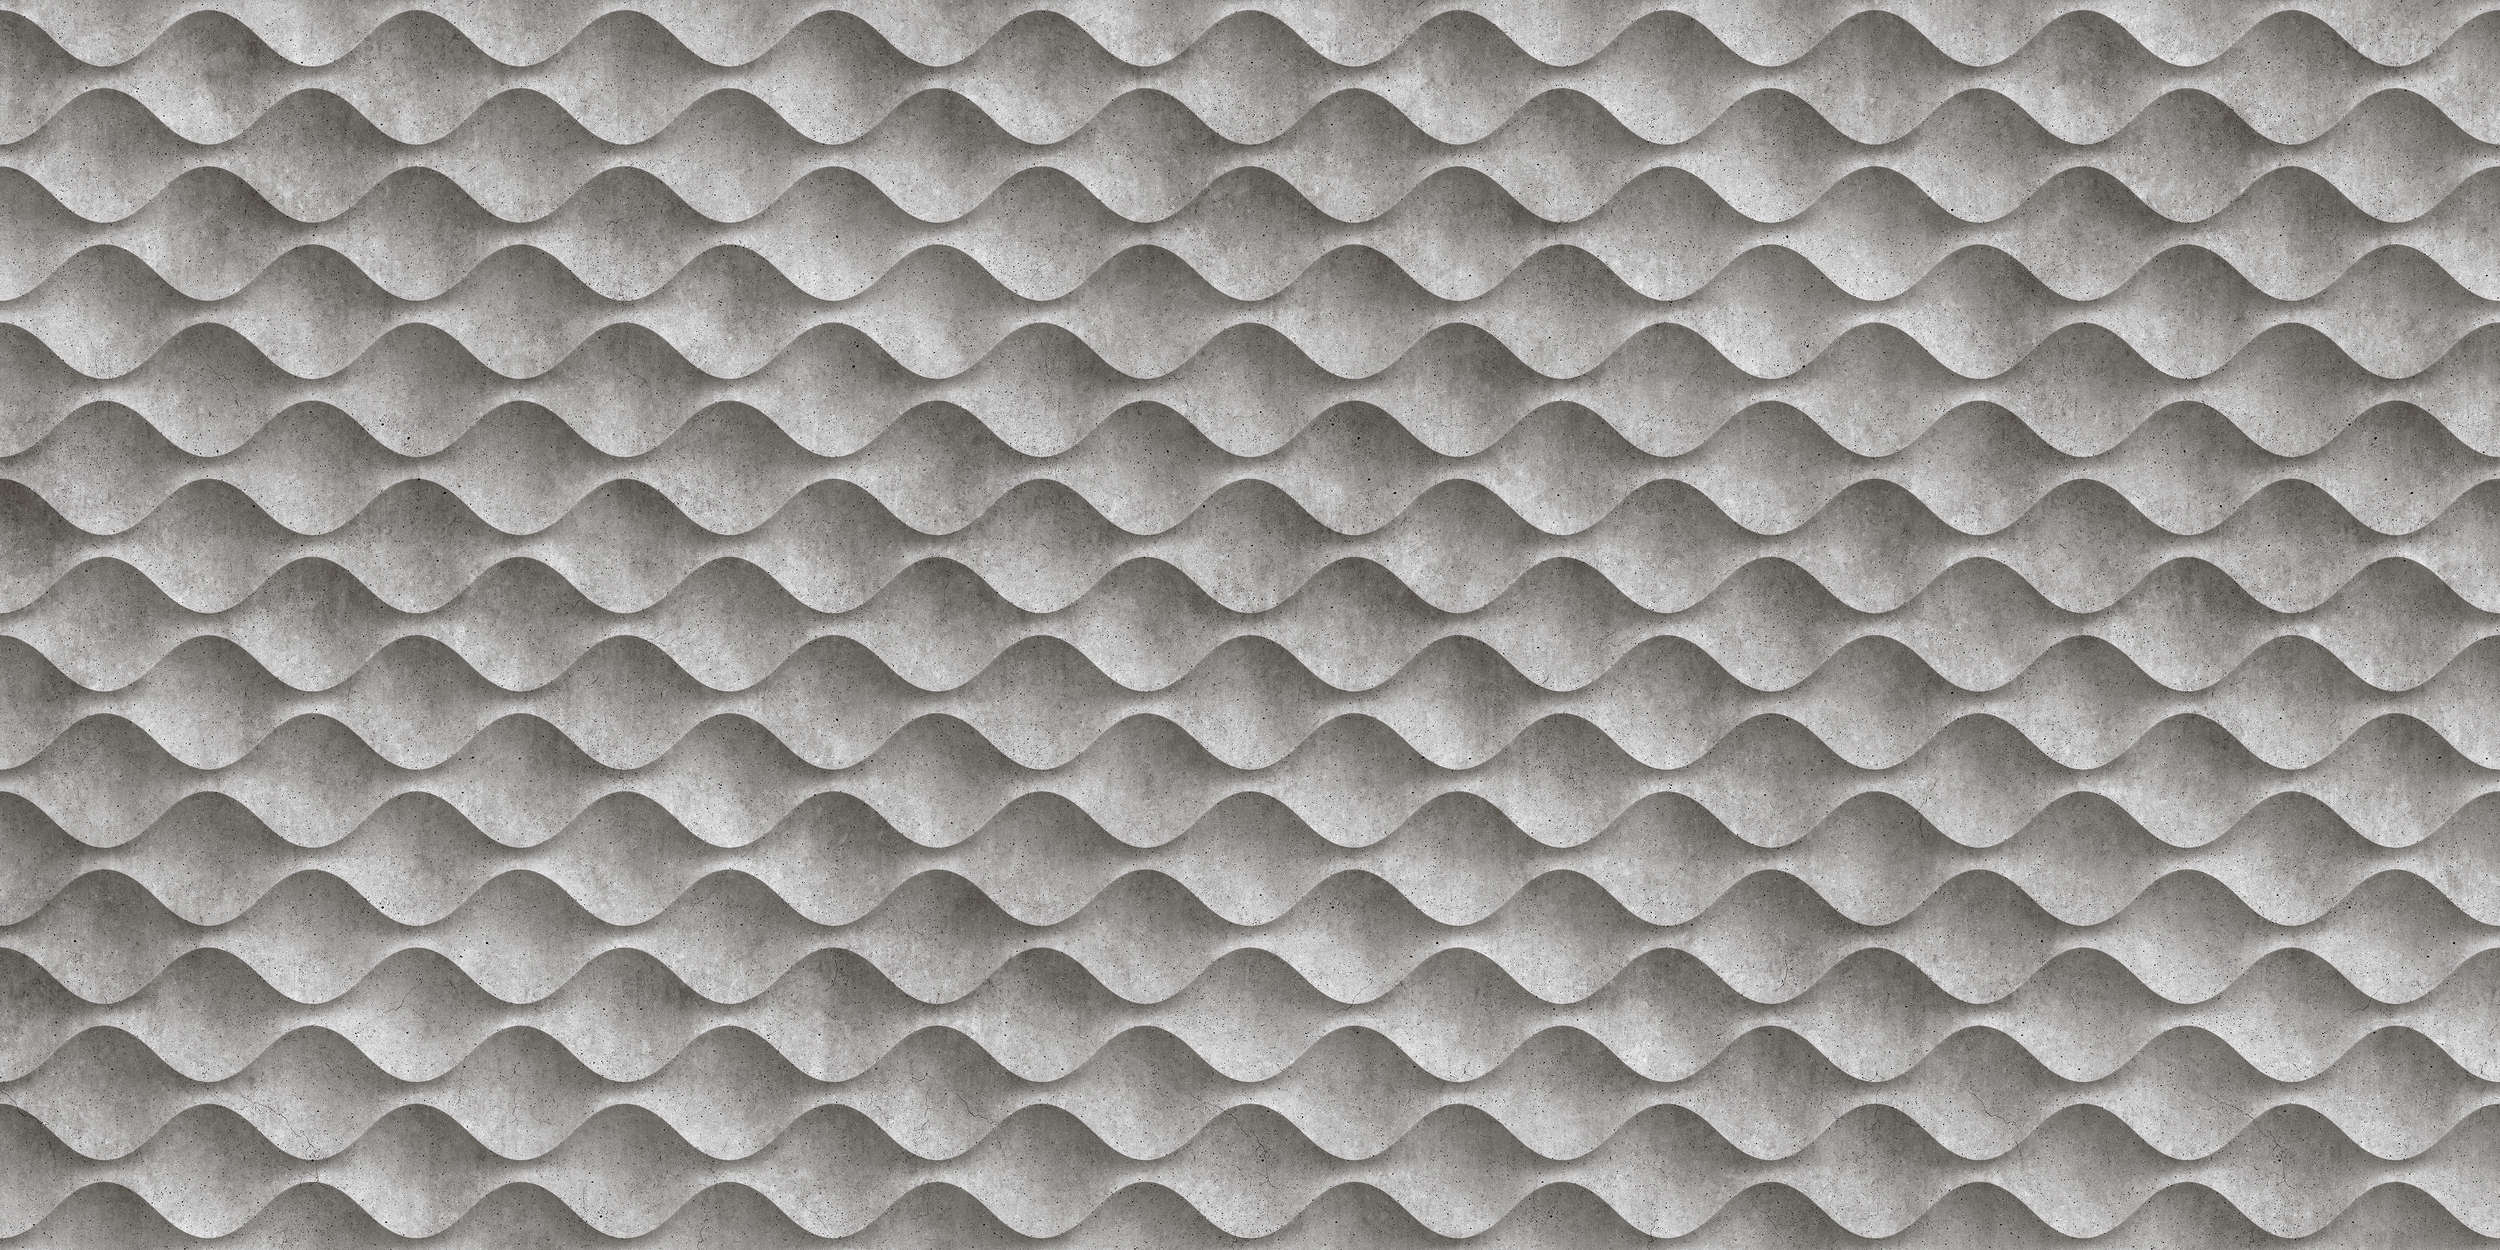             Concrete 1 - Cool 3D Concrete Waves Onderlaag behang - Grijs, Zwart | Textuur Niet-geweven
        